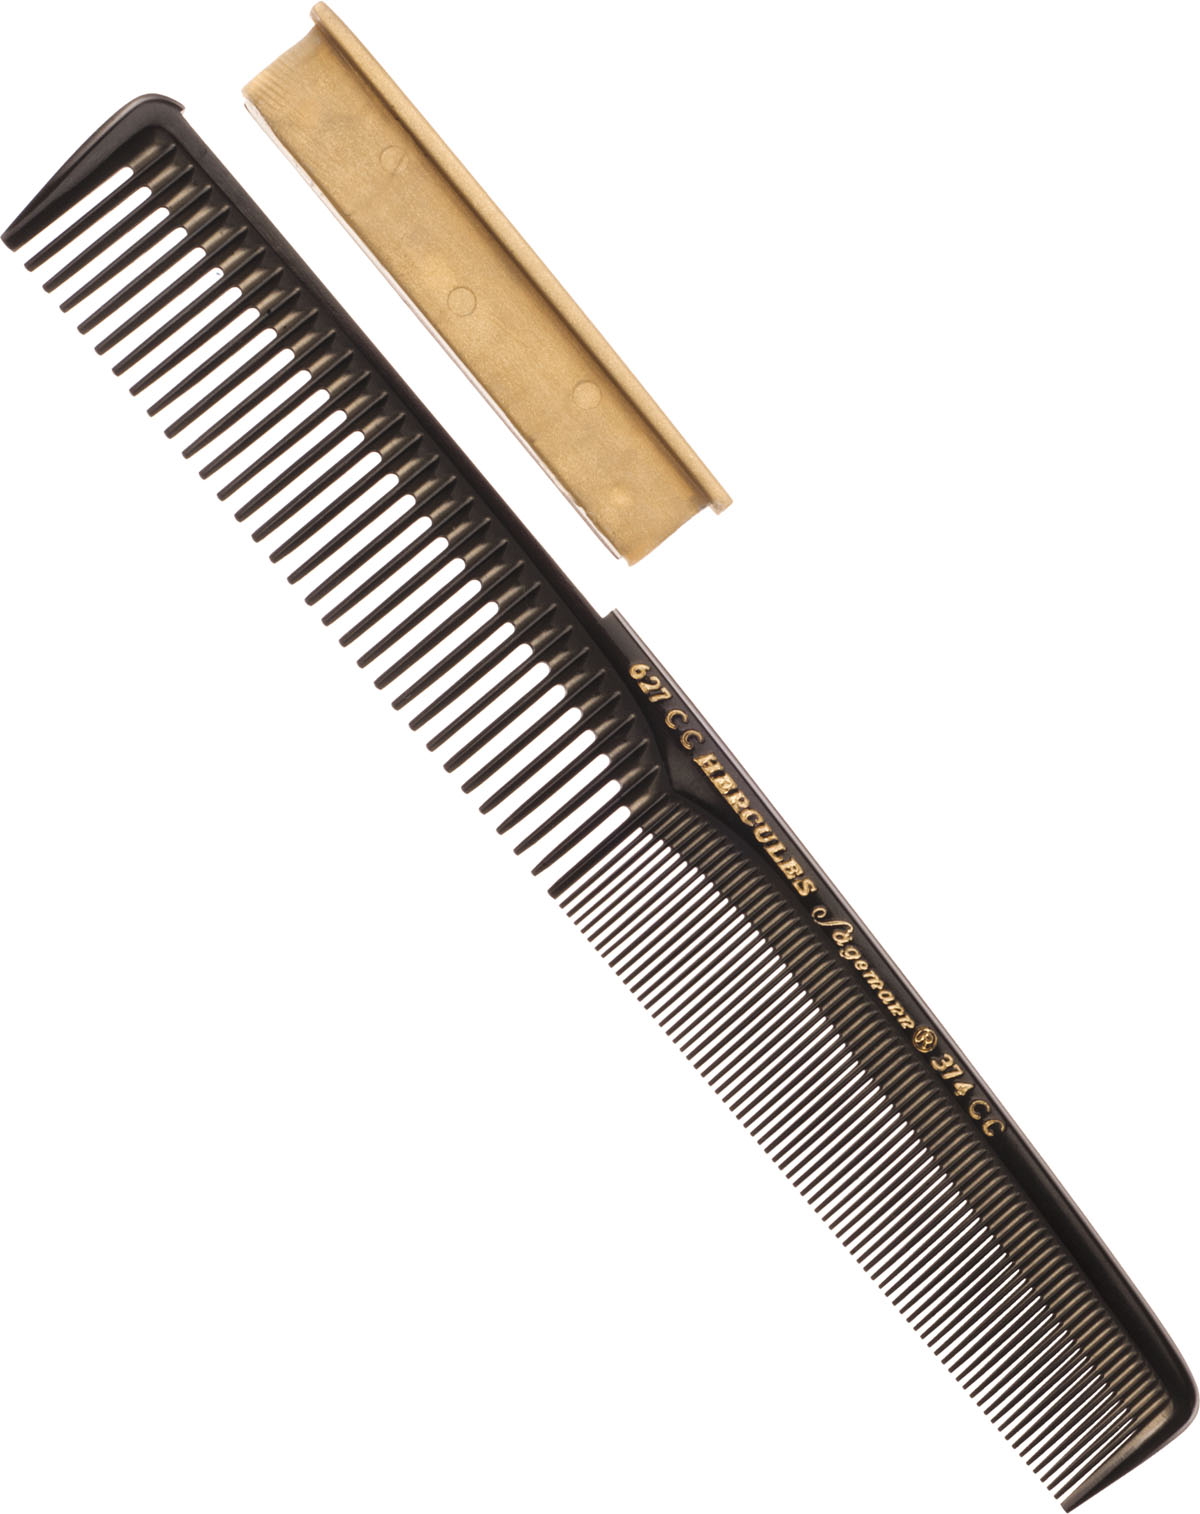  Hercules Sägemann Hair Cutting Comb with Blade 7", No. 627 CC 